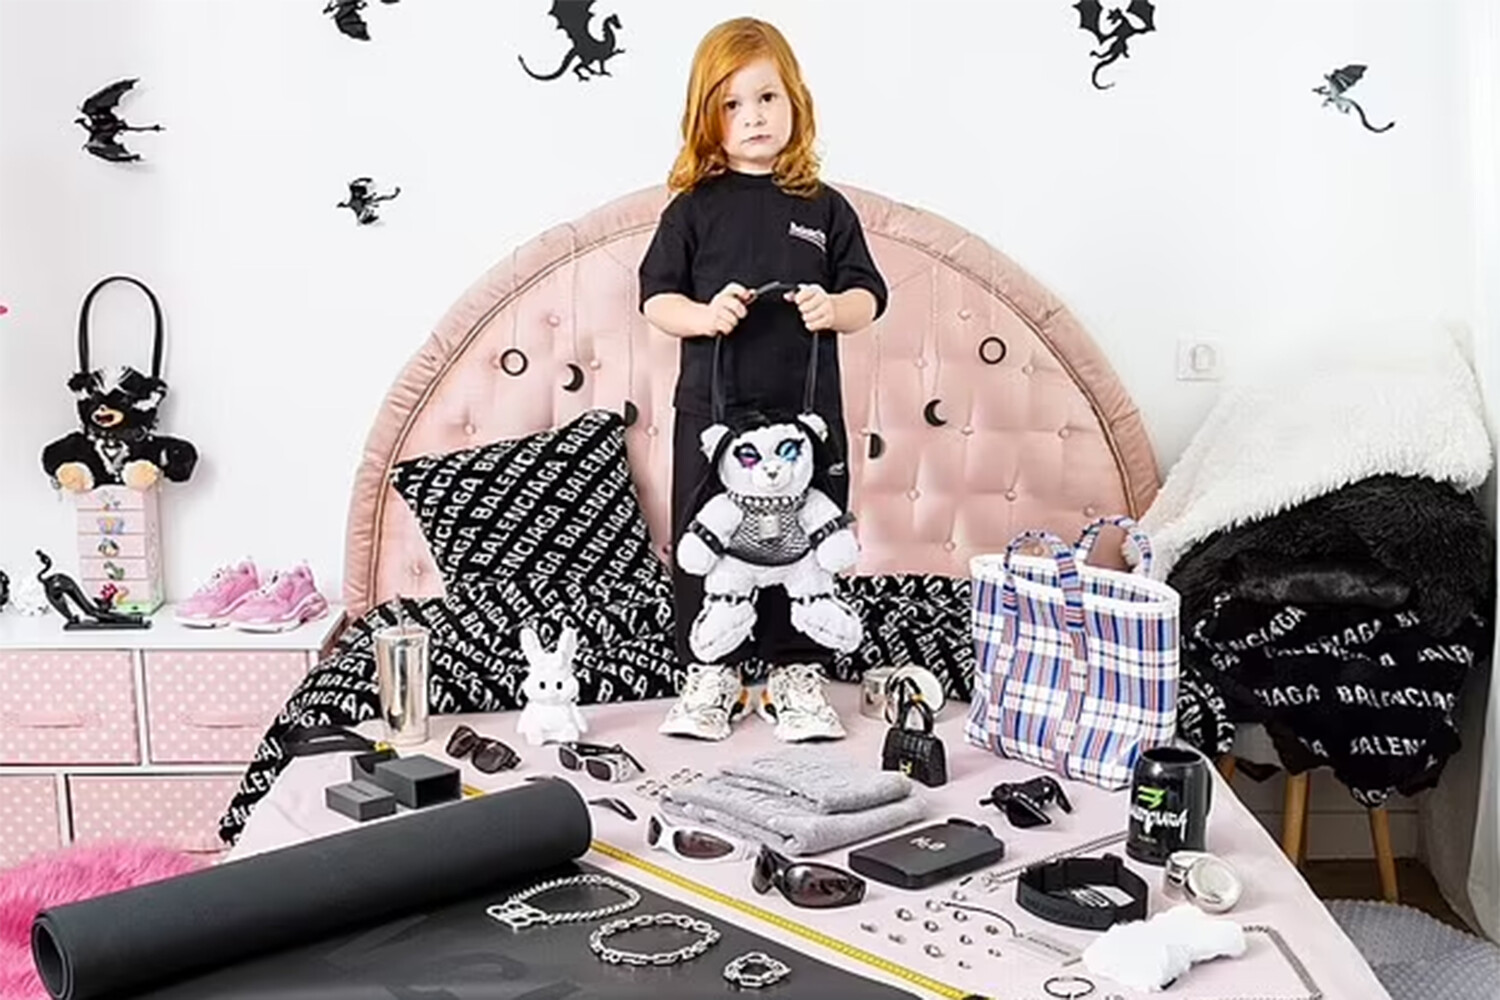 Бренд Balenciaga осудили за рекламу с детьми и плюшевыми мишками в БДСМ-бондаже  - Газета.Ru | Новости